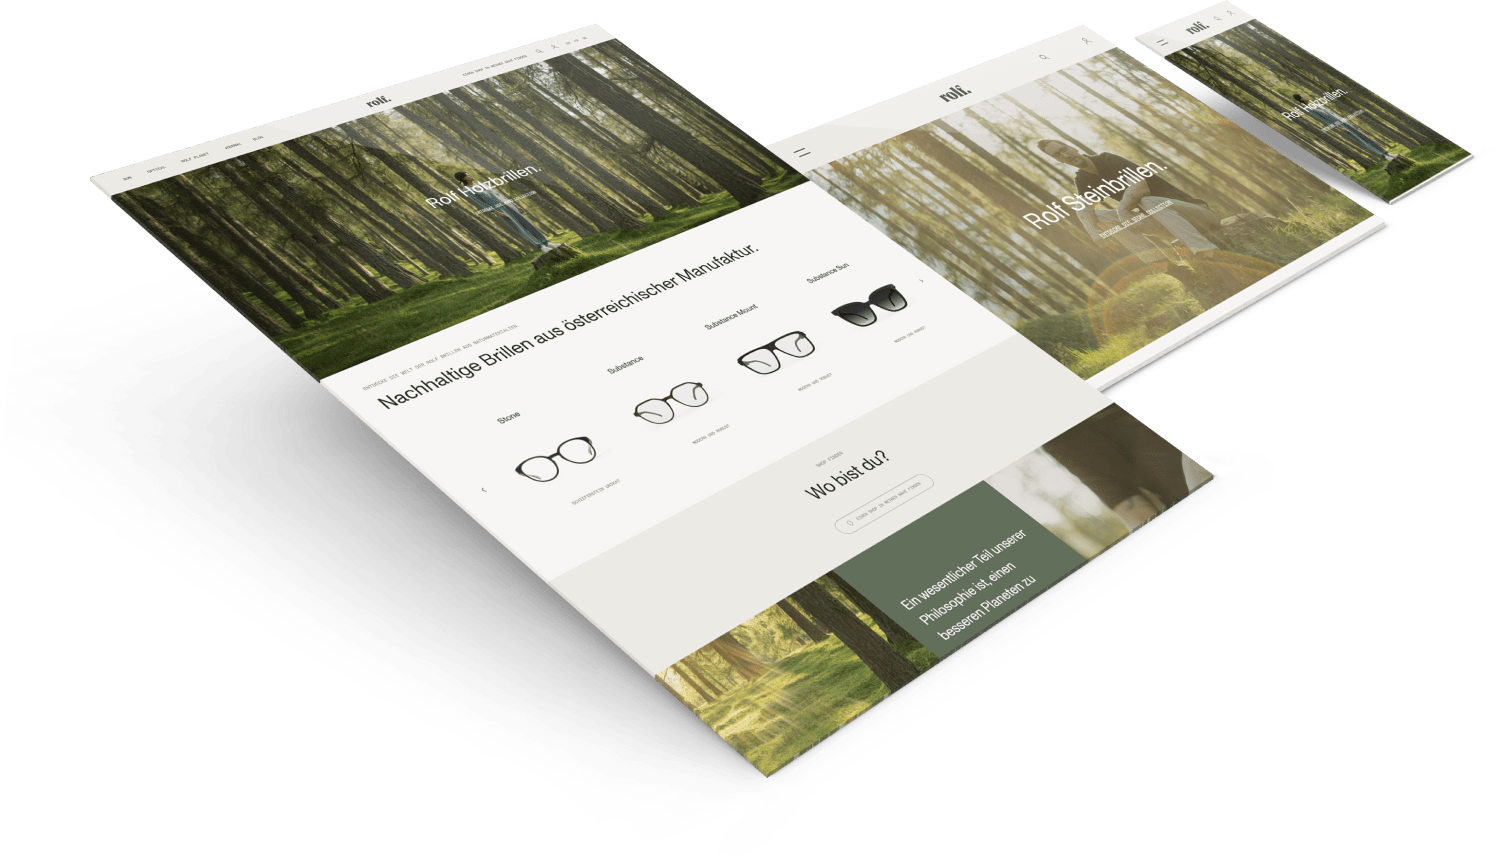 "Webseiten-Design-Mockup für SEO-Agentur-Tirol mit Fokus auf Nachhaltigkeit und lokale Produkte"